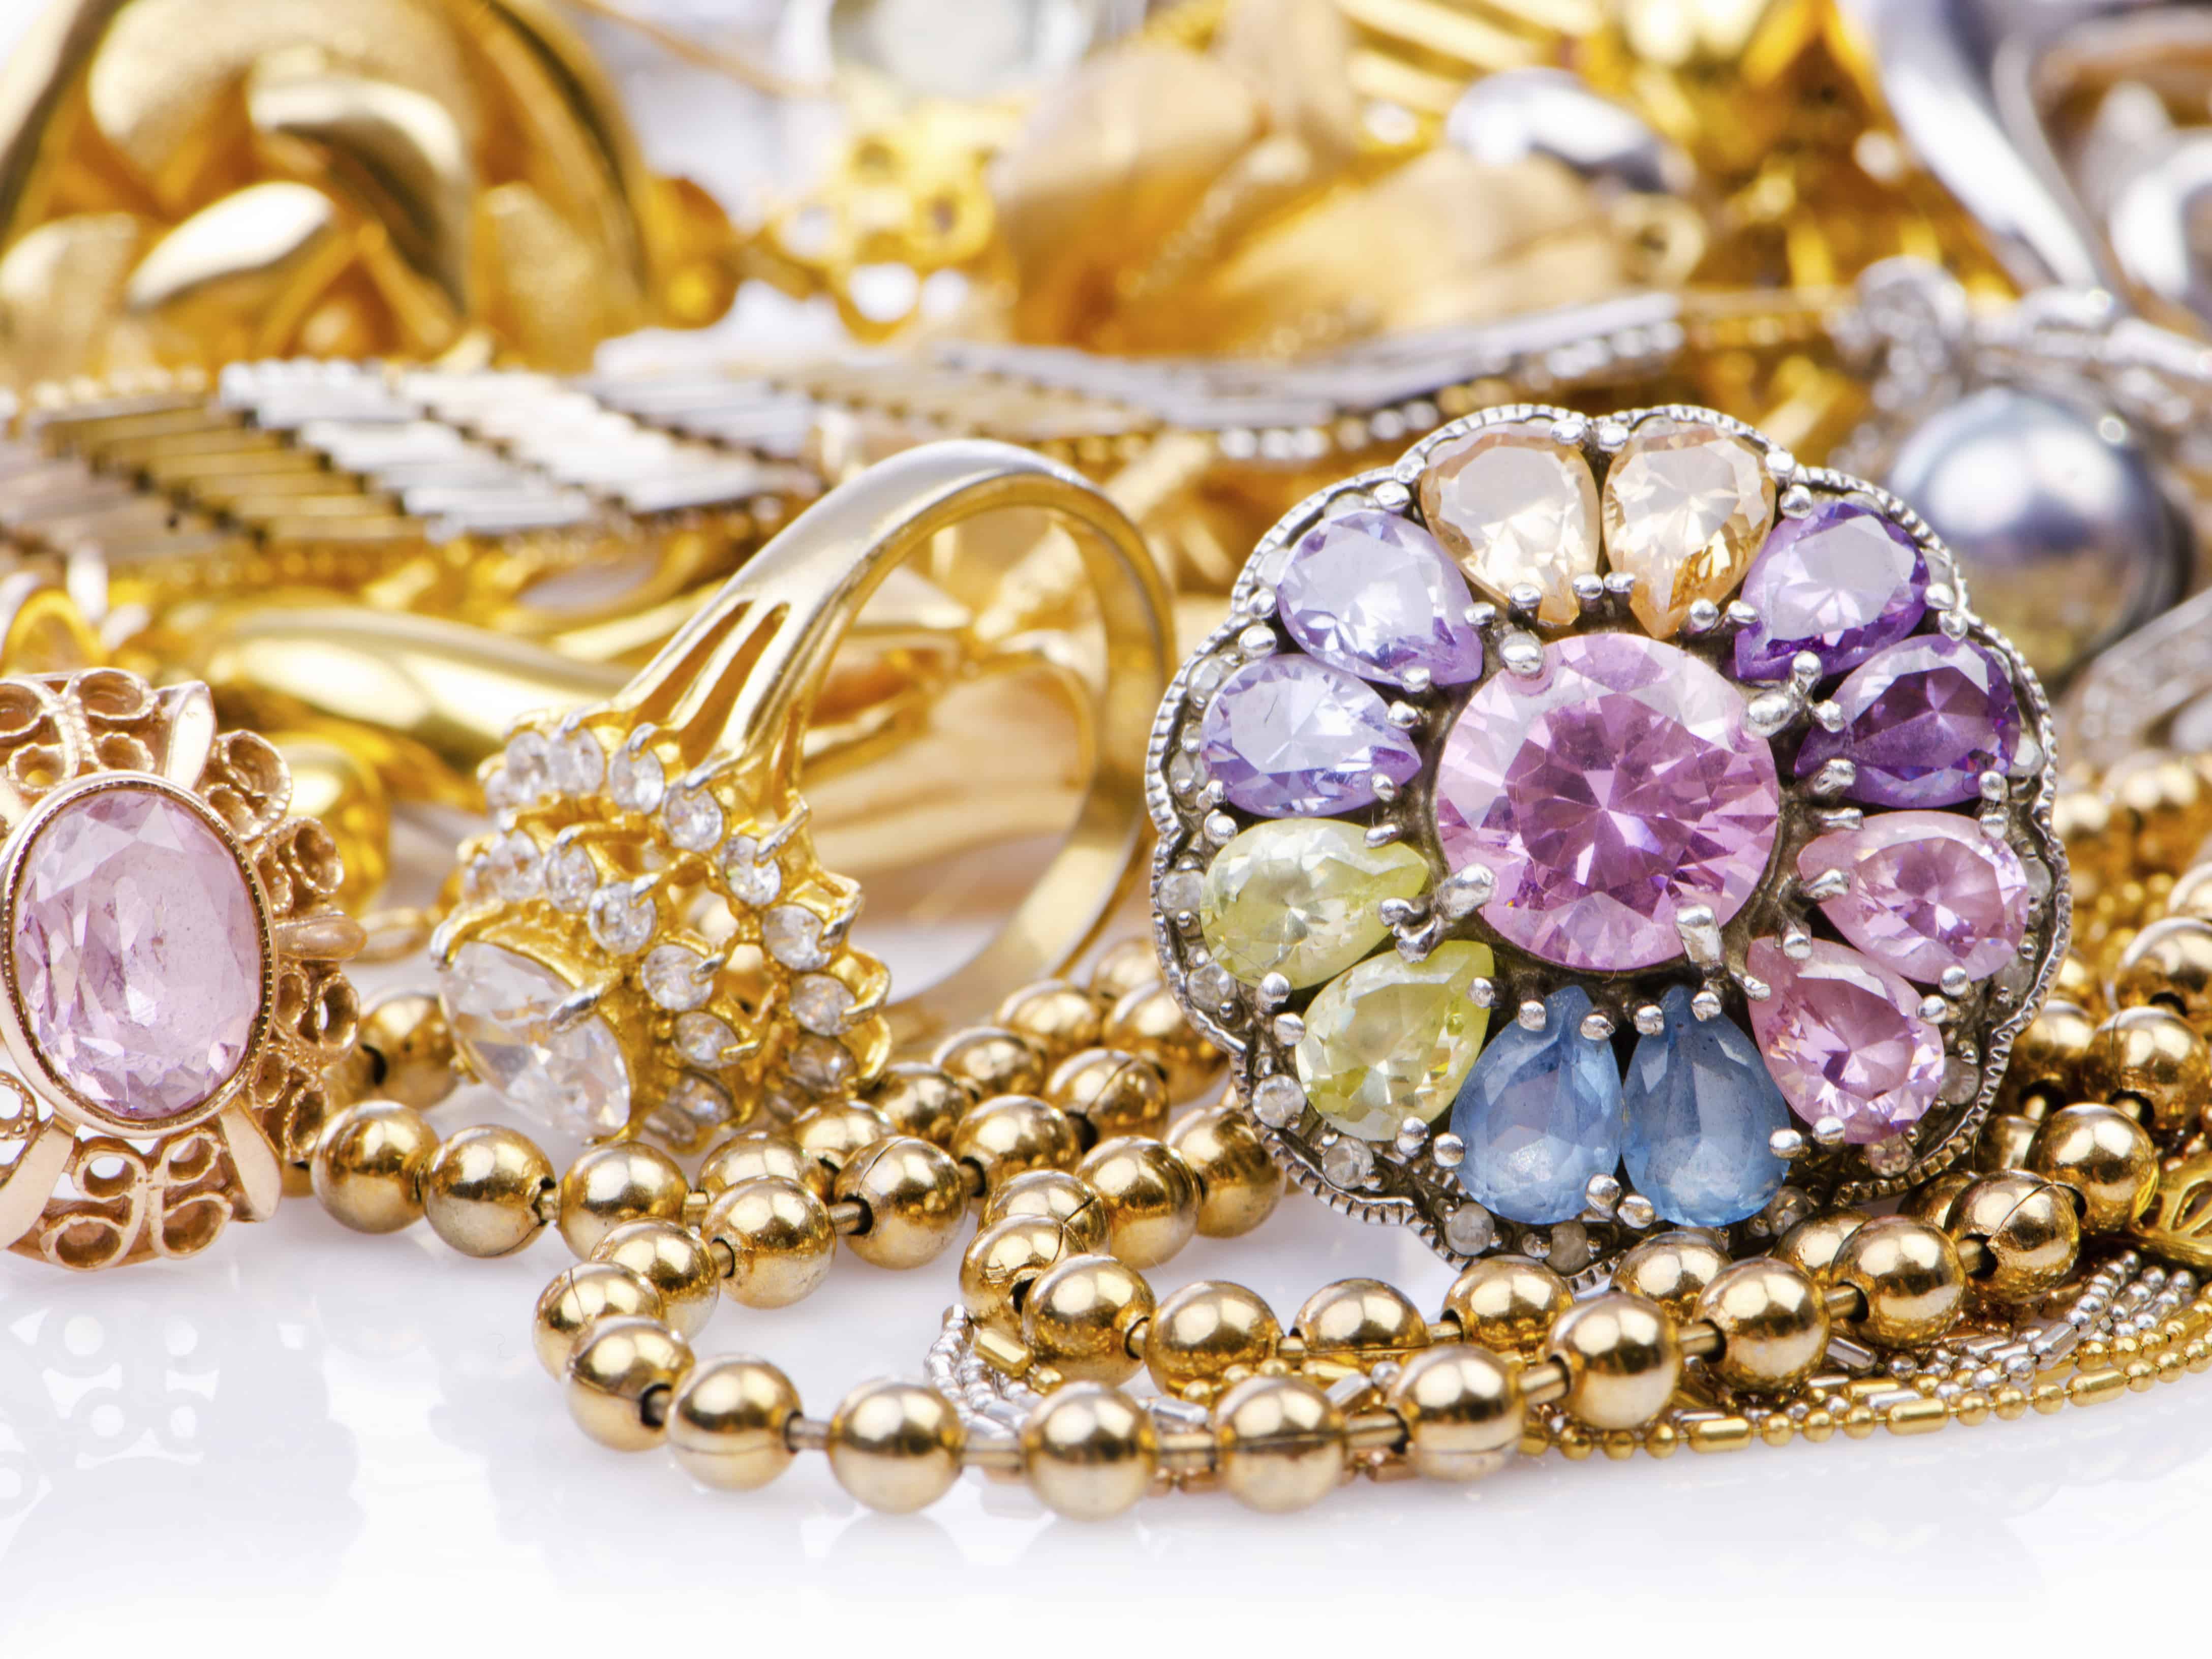 Jewelry ювелирное изделие. Красивая бижутерия. Золотые украшения. Драгоценные украшения для женщин. Красивые украшения золото.